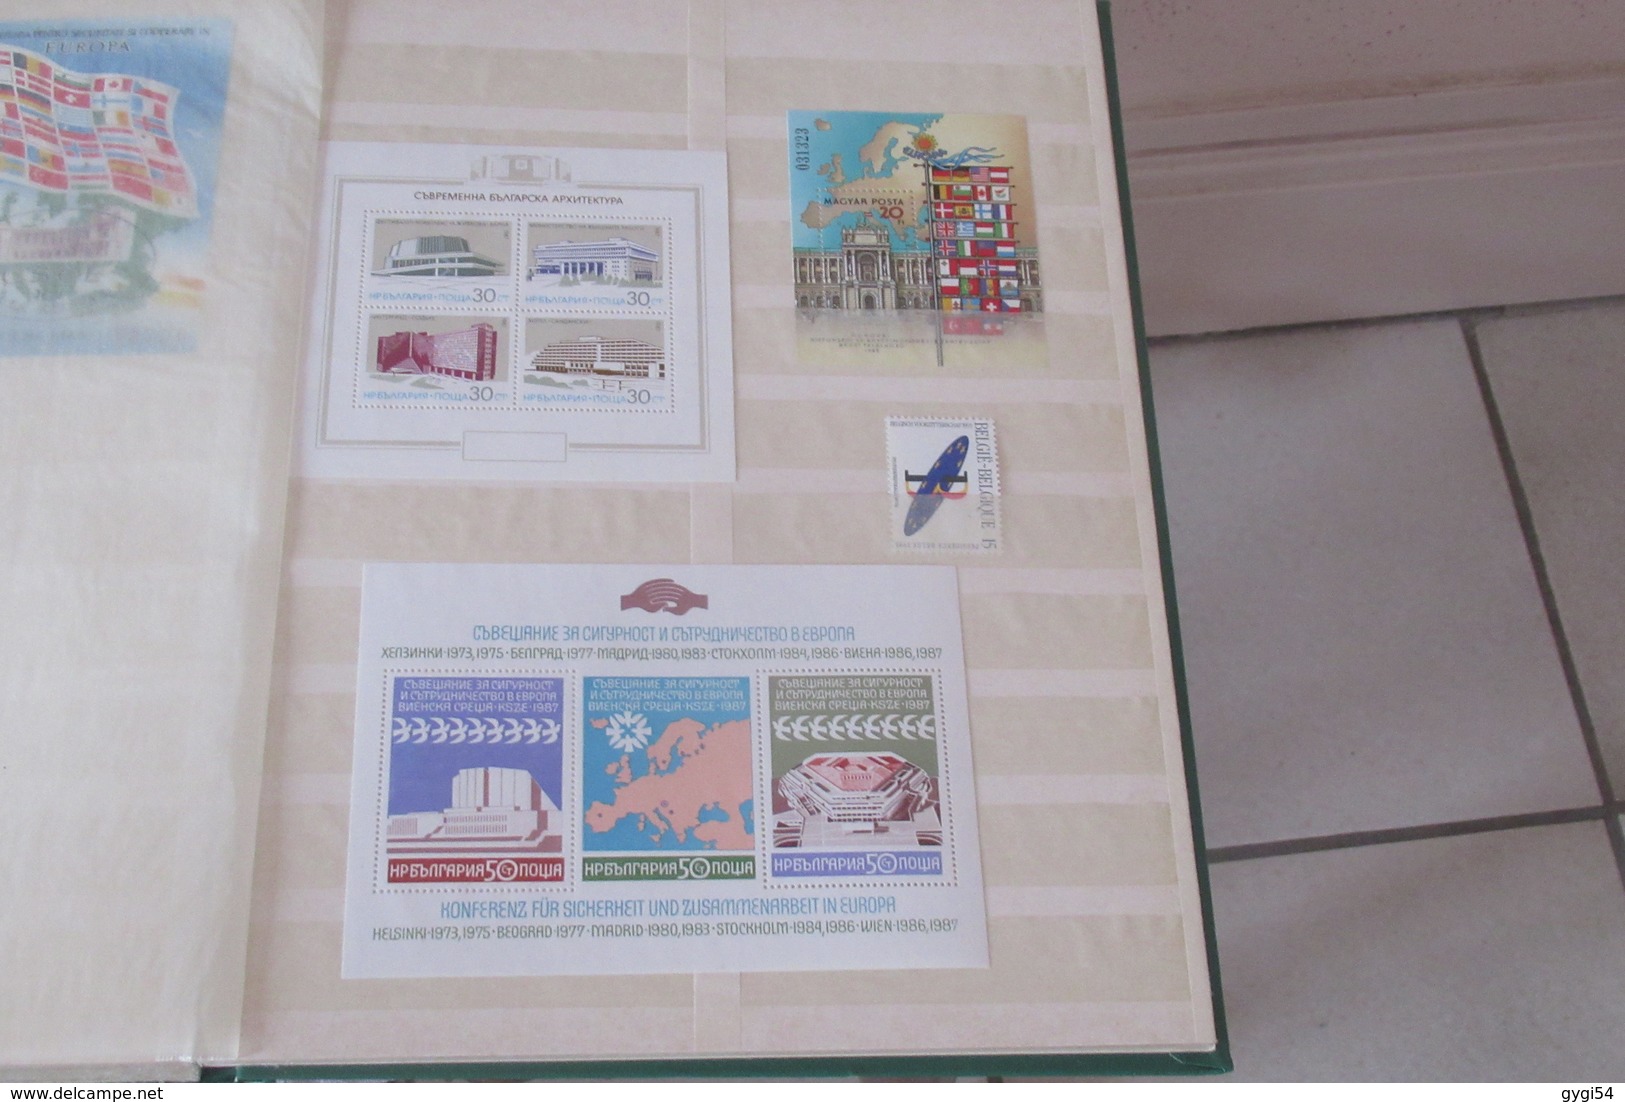 Collection de timbres divers d'europe en MNH